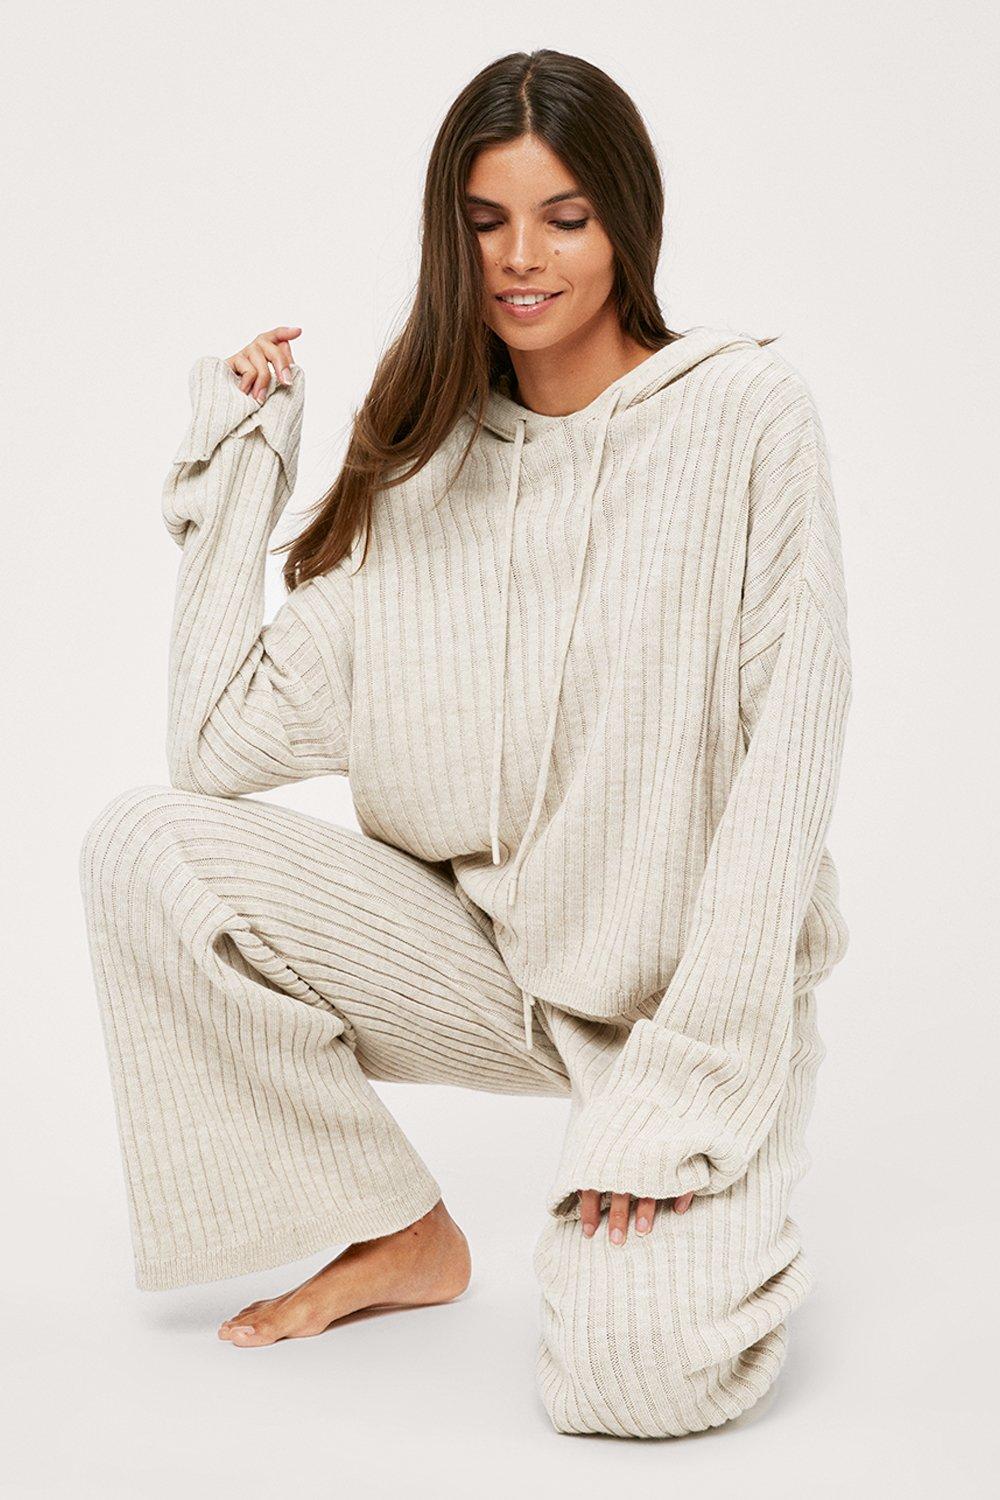 Women’s Knitted Lounge Co-ord Loungewear Suit Set Sleepwear Knit 2pcs Casual UK